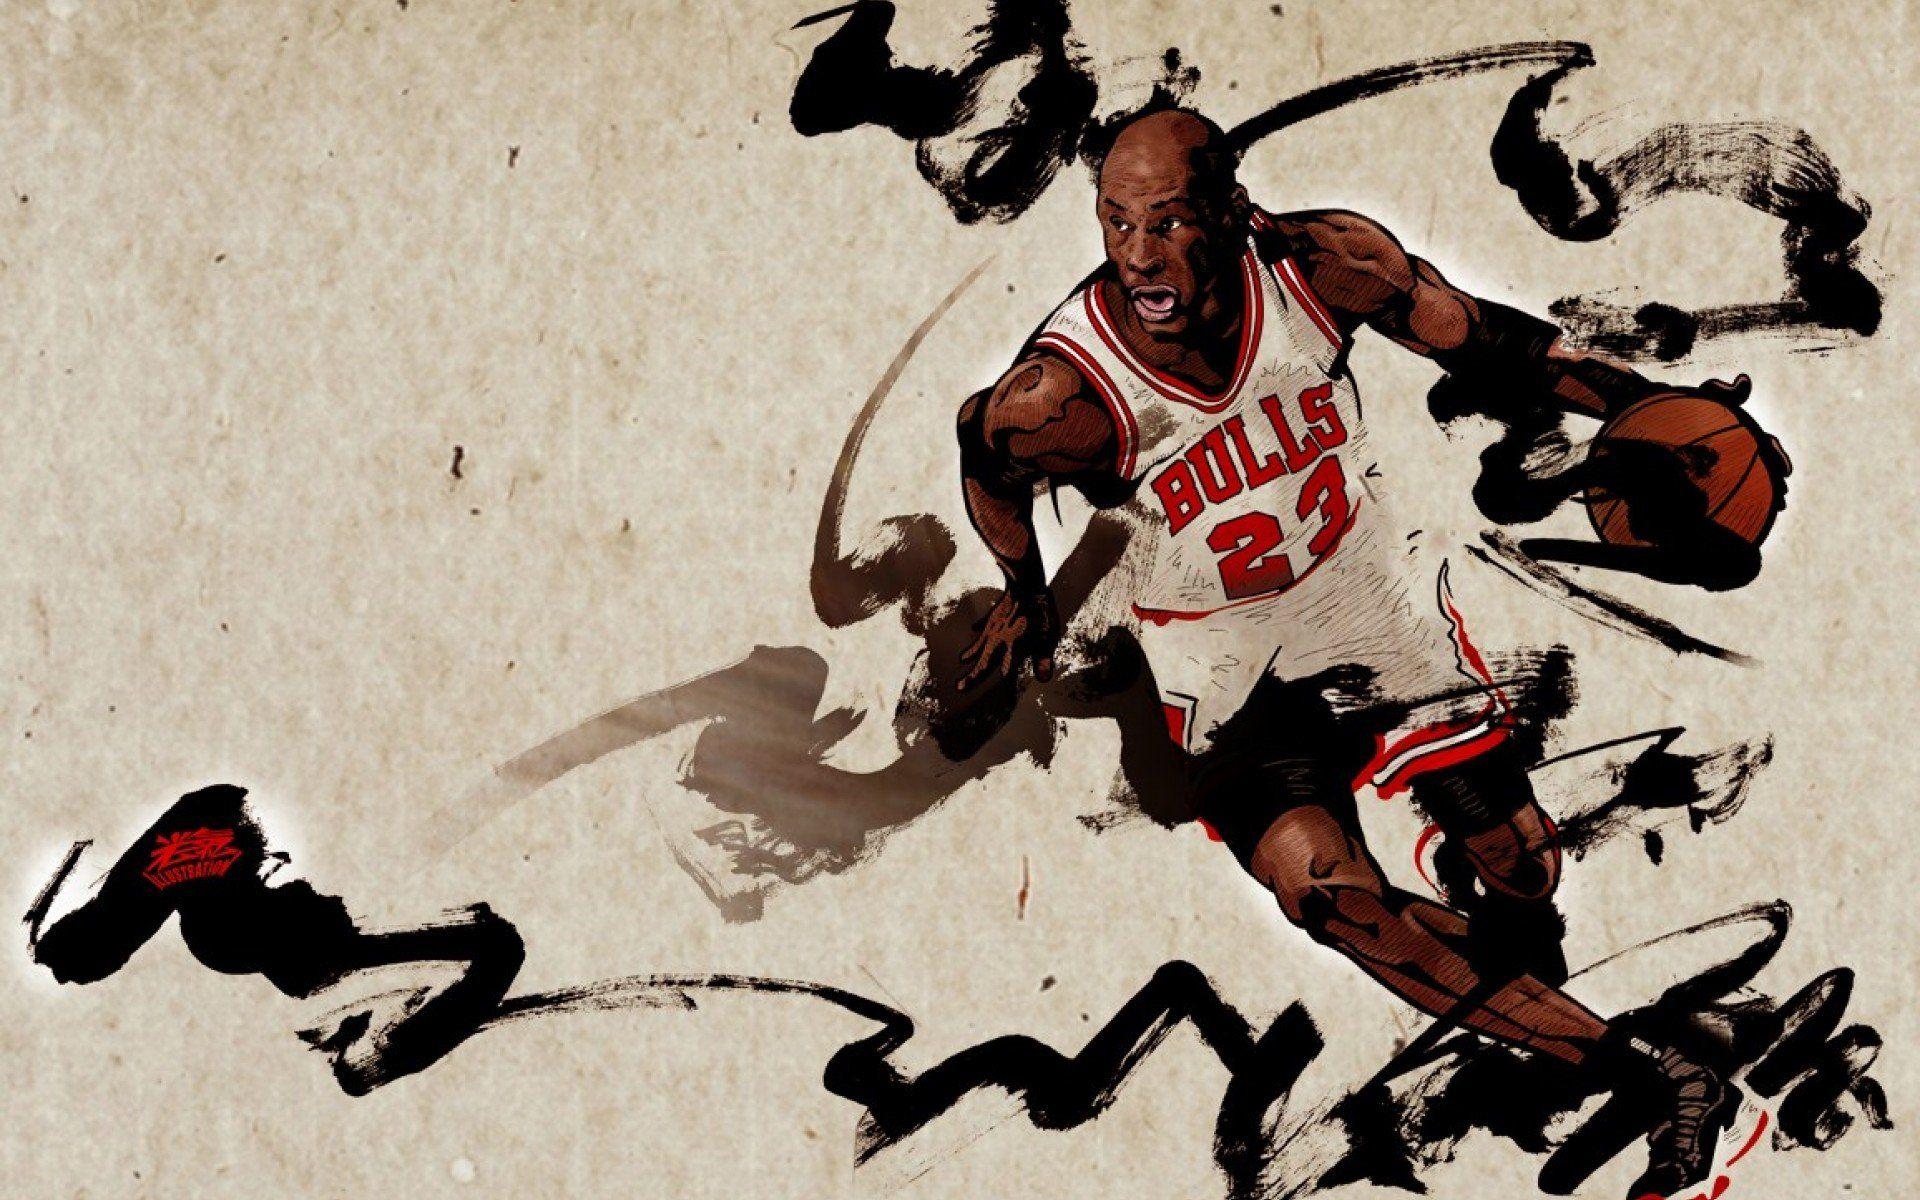 Michael Jordan Wallpaper HD Download Free